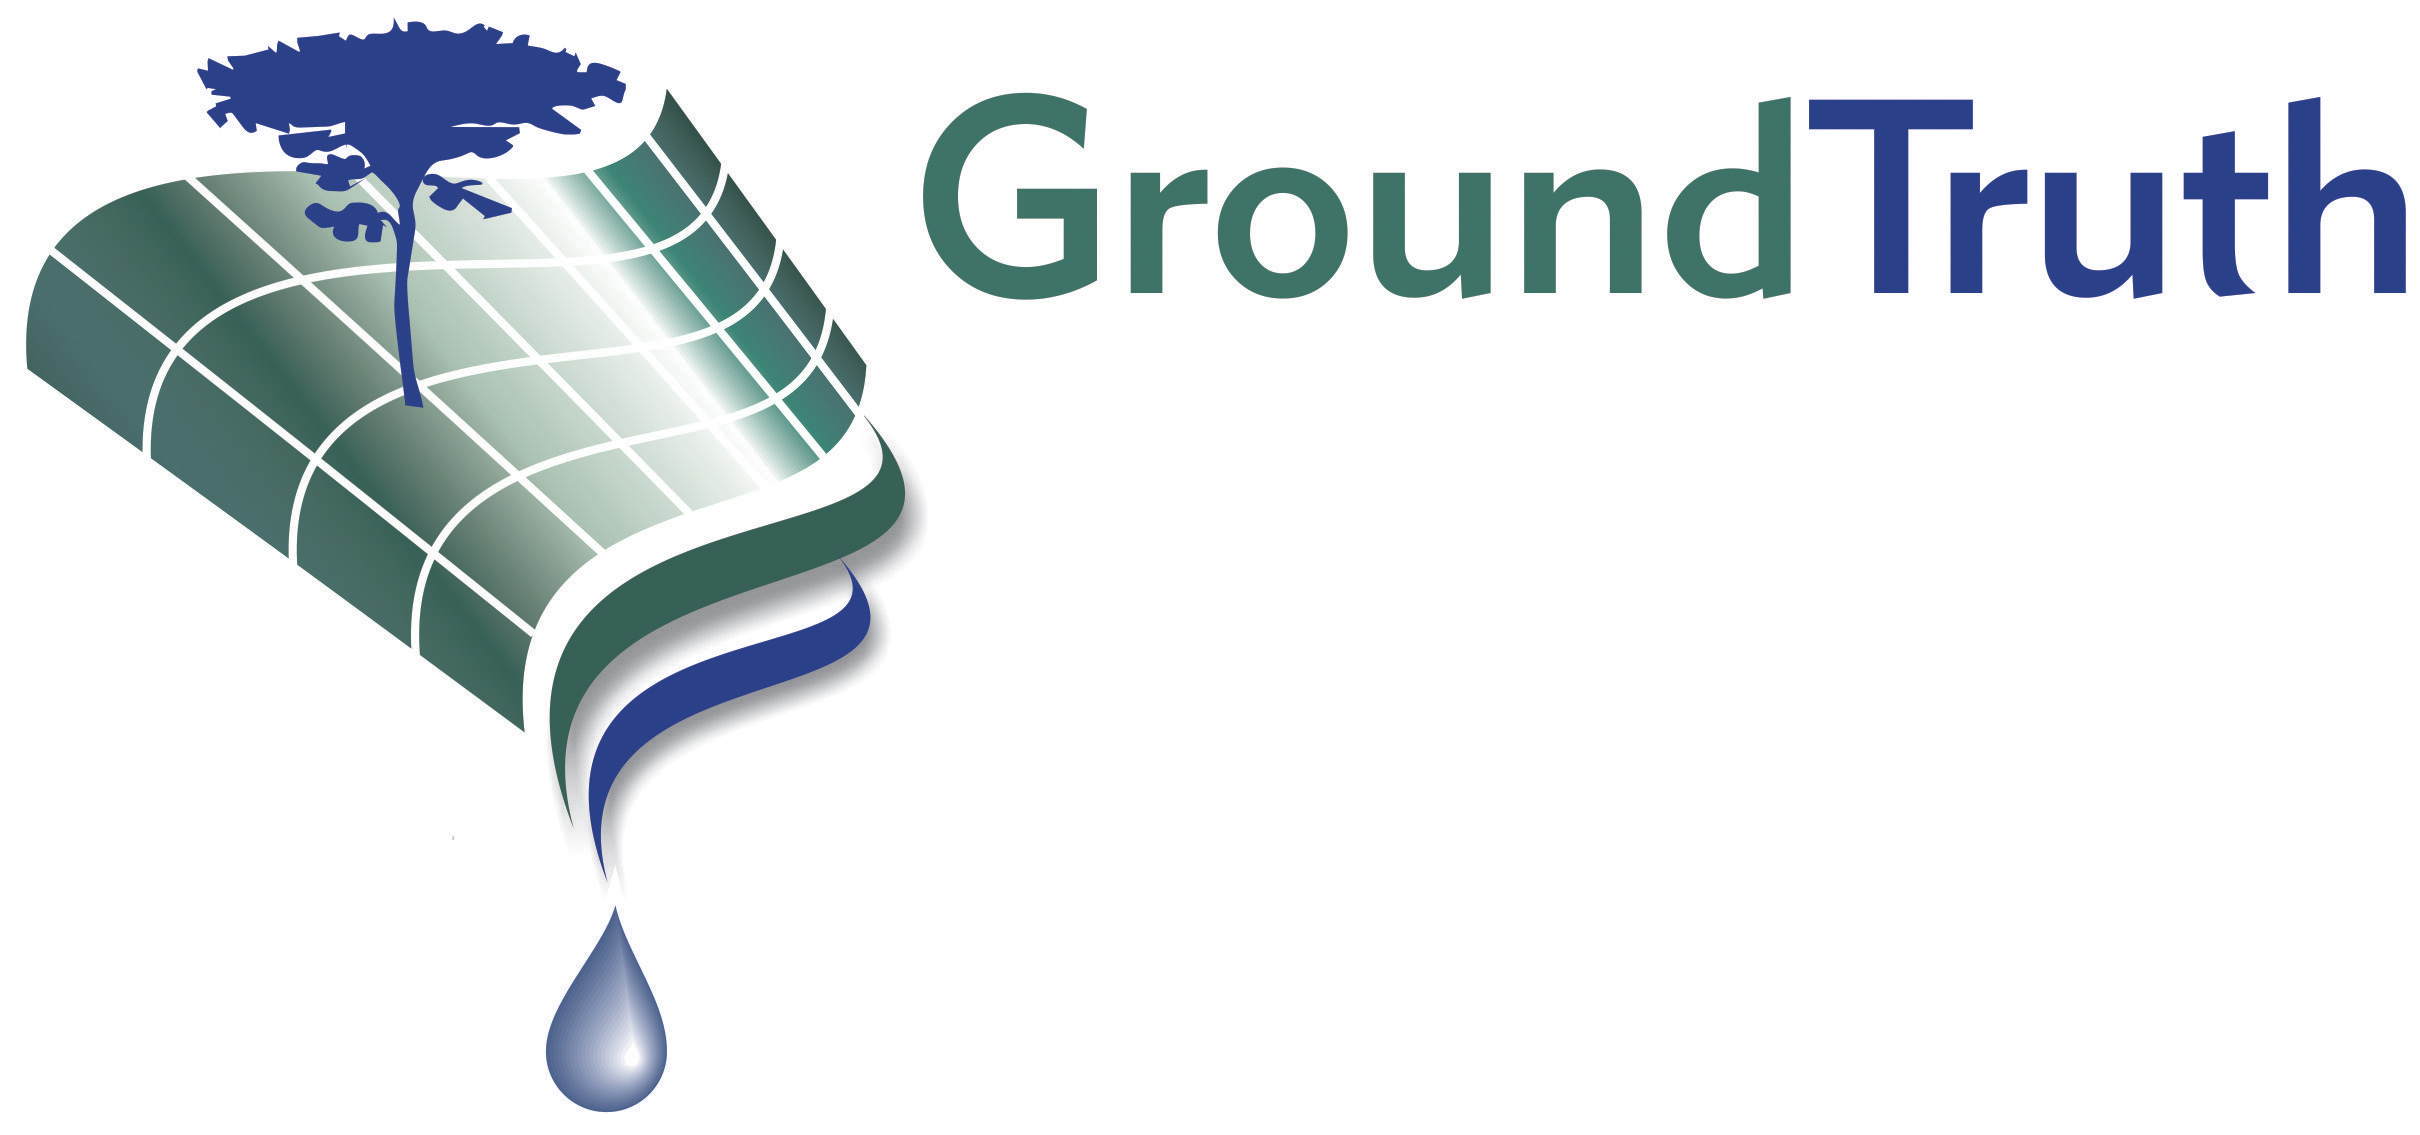 GroundTruth Training